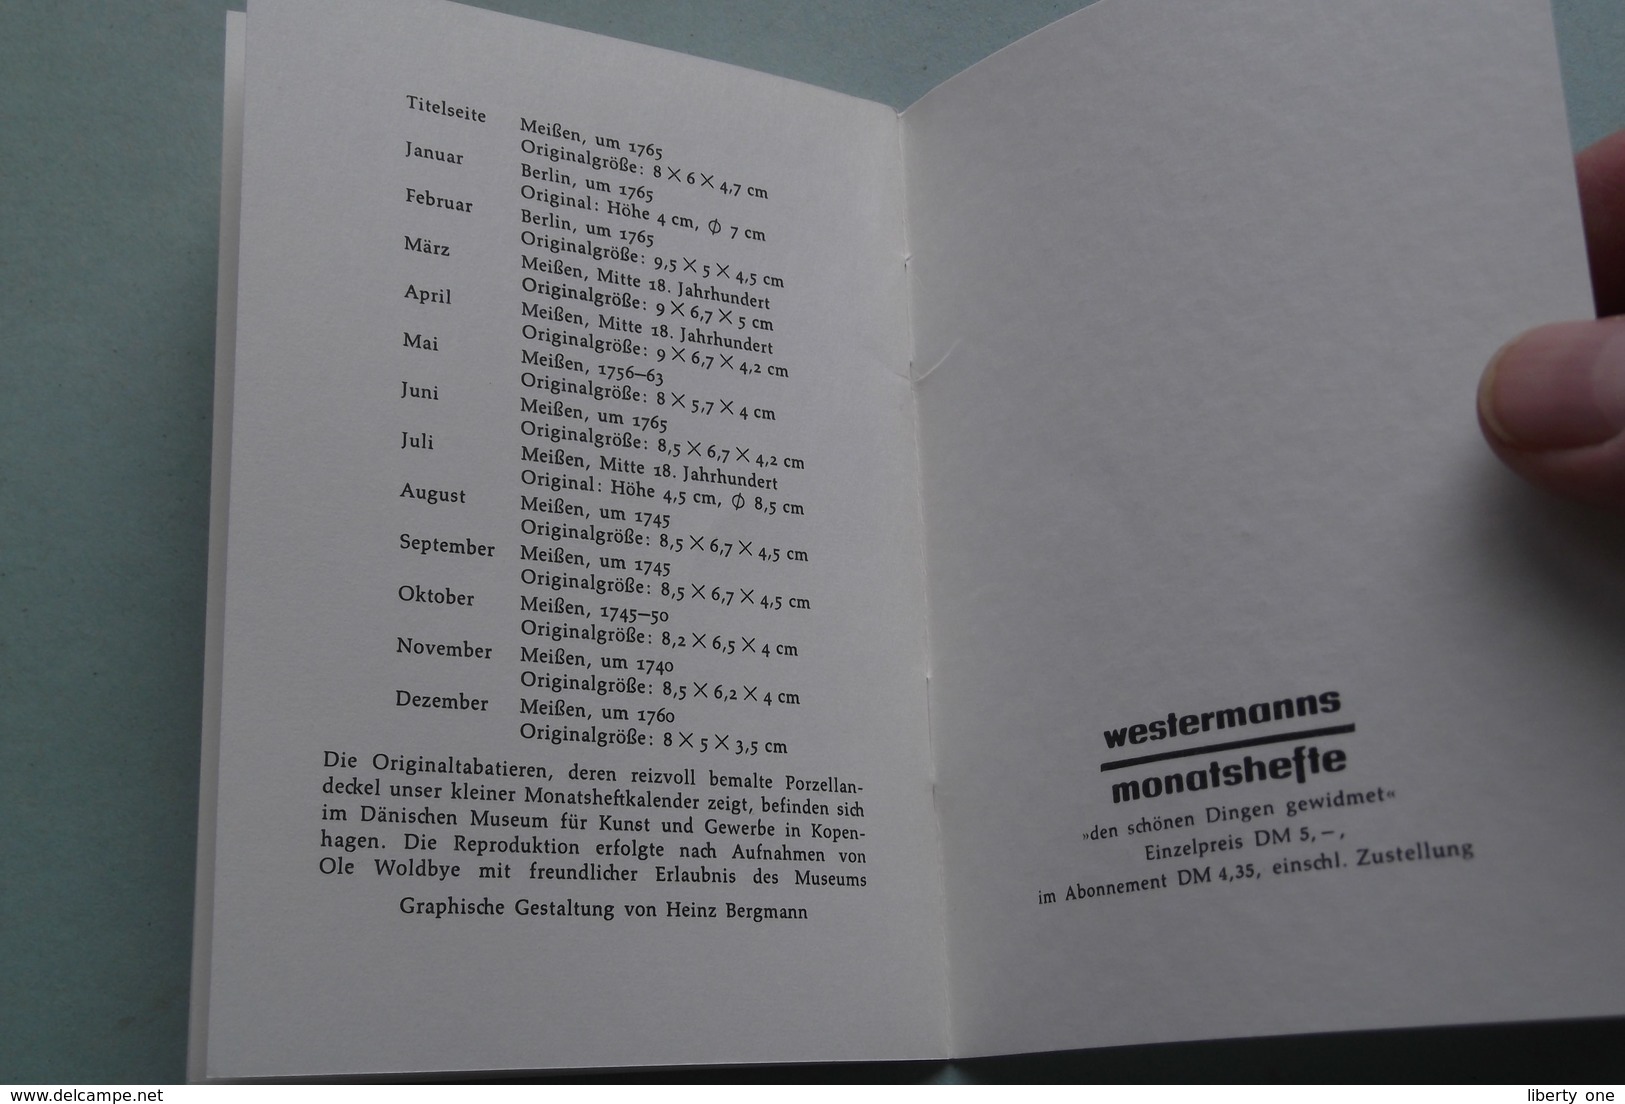 ROKOKO-TABATIEREN > Georg WESTERMANN Verlages von Johannes SCHULTE Zweibrücken ( Kalender 1968 > zie foto's ) !